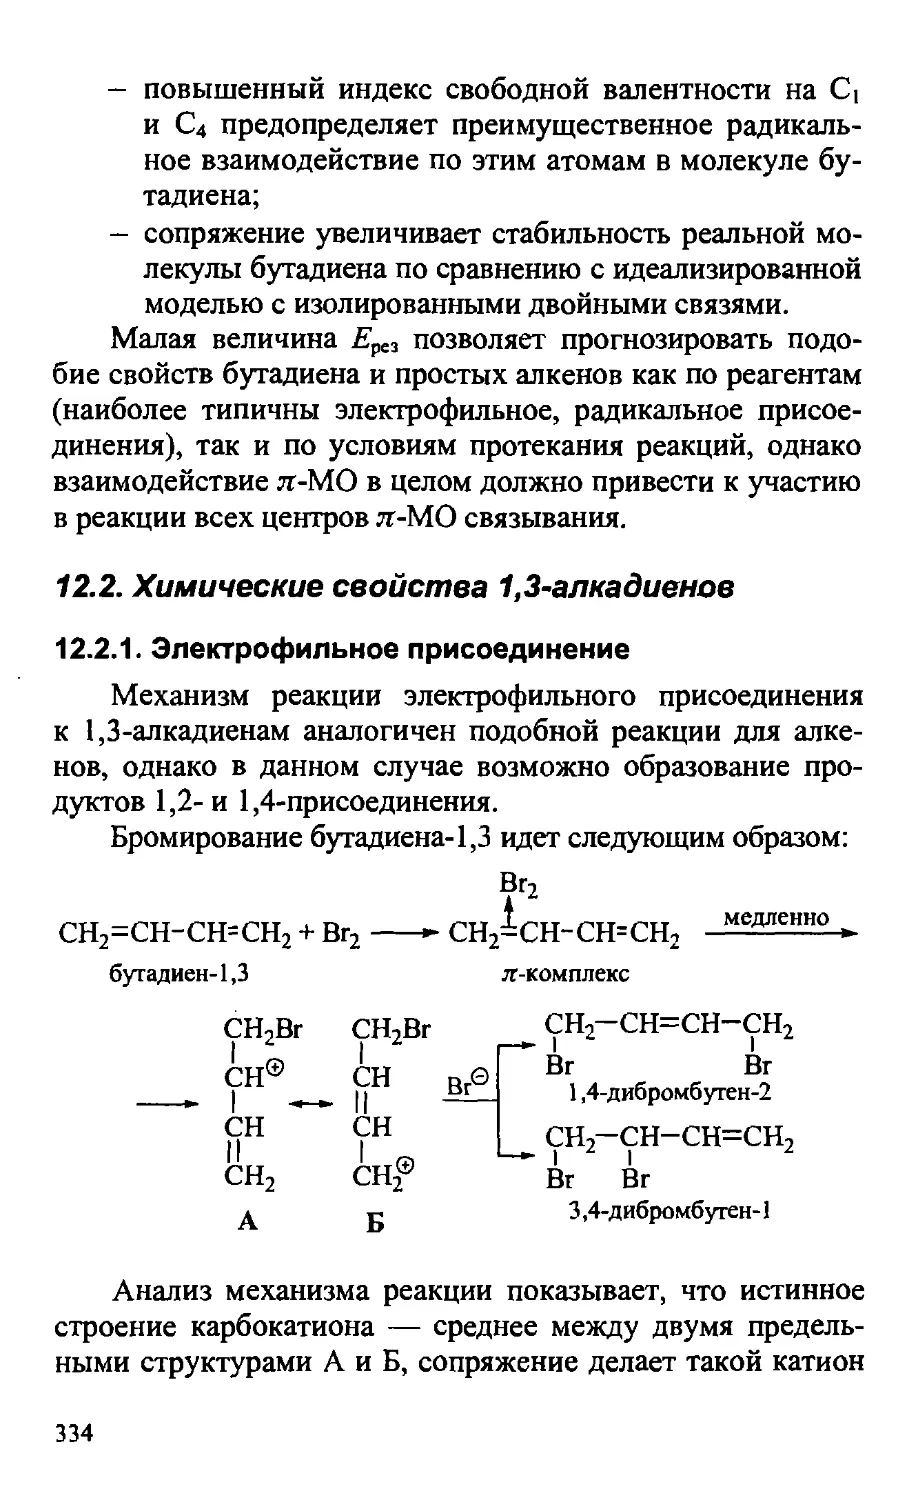 {334} 12.2. Химические свойства 1,3-алкадиенов